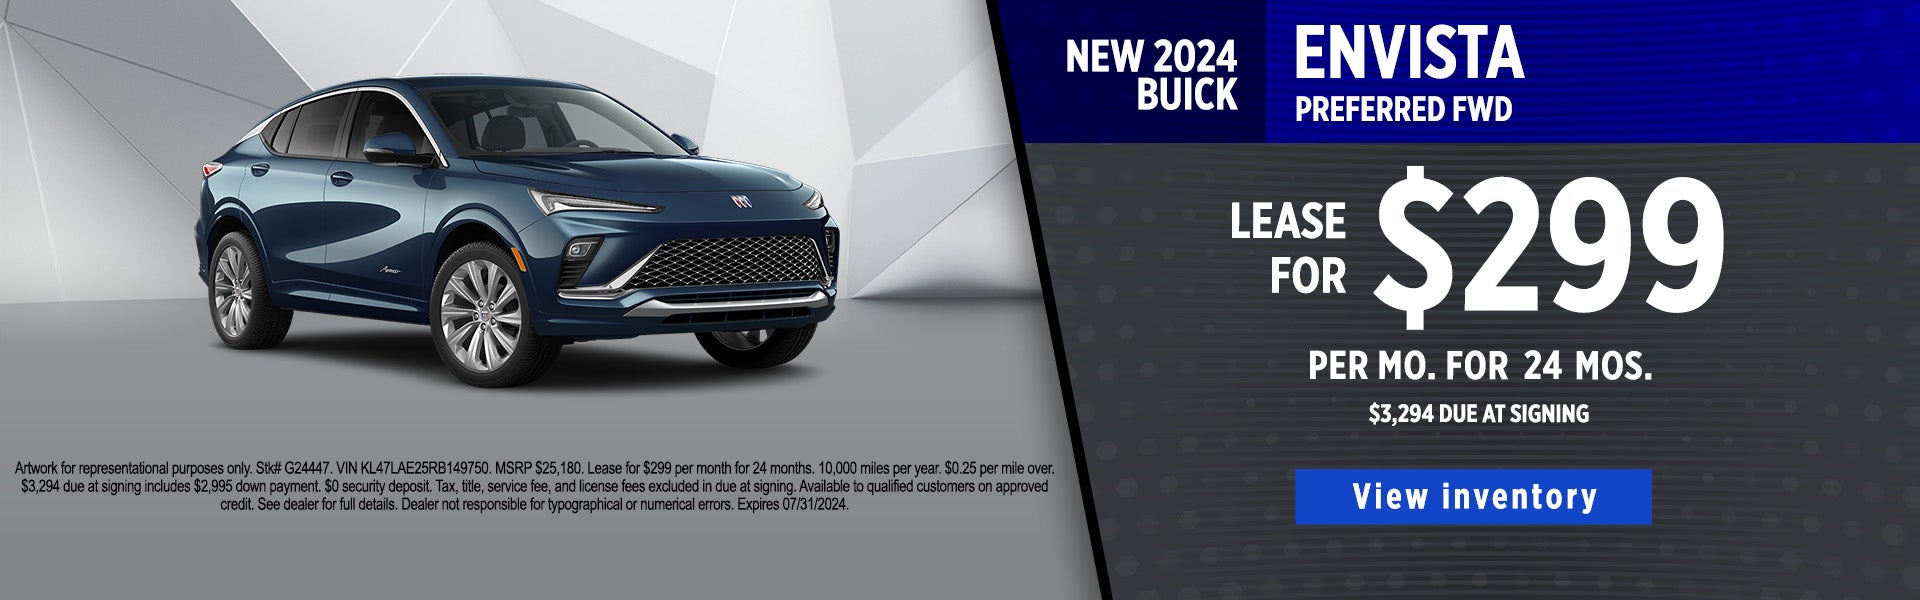 New 2024 Buick Envista